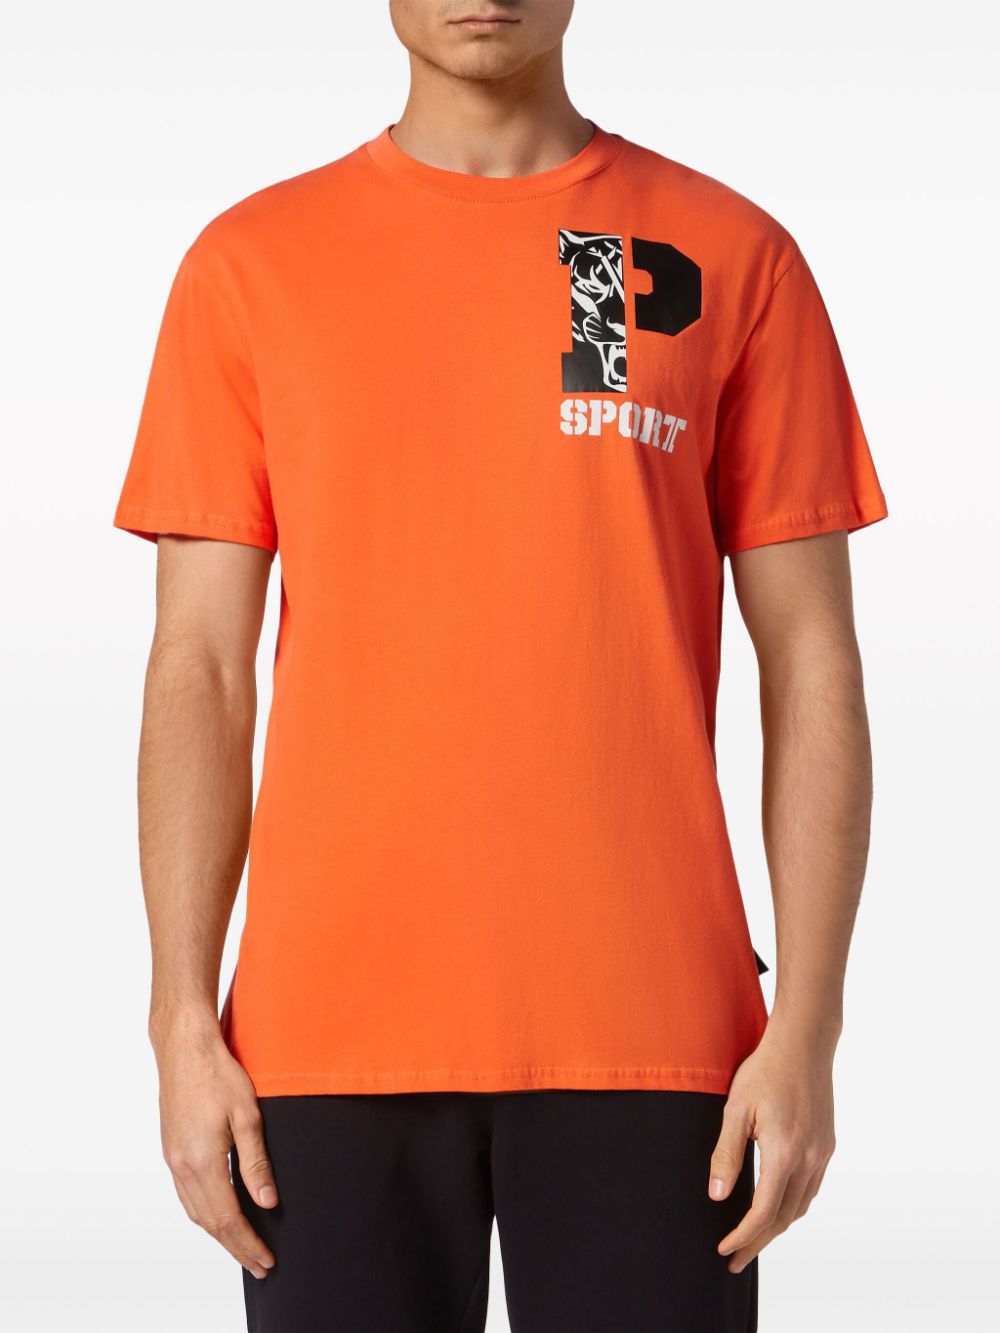 Plein Sport T-shirt met logoprint - Oranje